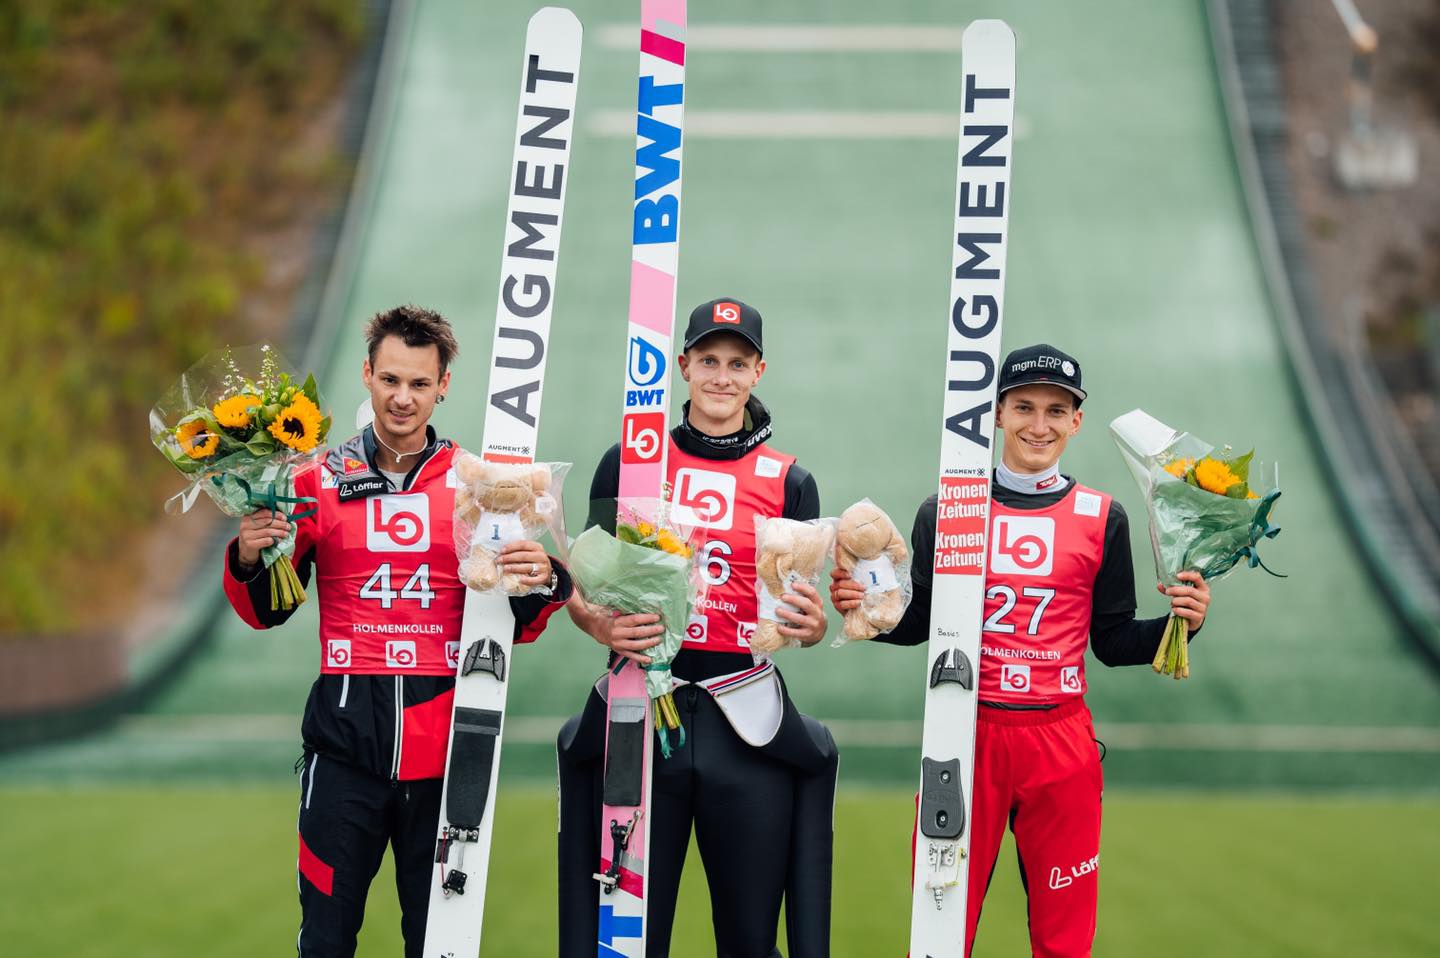 Continentalcup Oslo: Heimsieg für Andreas Granerud Buskum